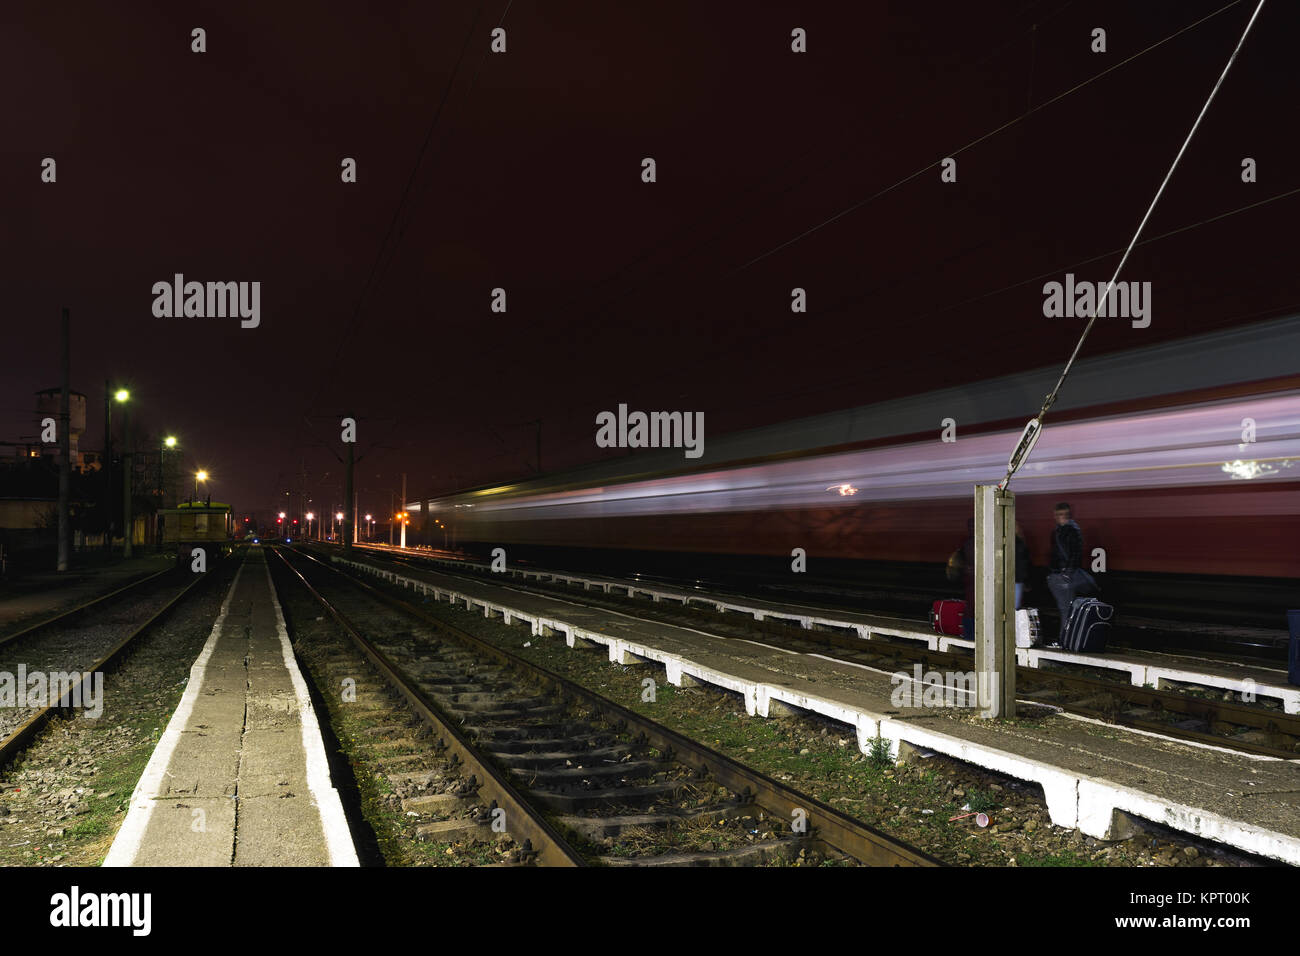 El tren pasa por una estación de ferrocarril rural en Arad, Rumania Foto de stock